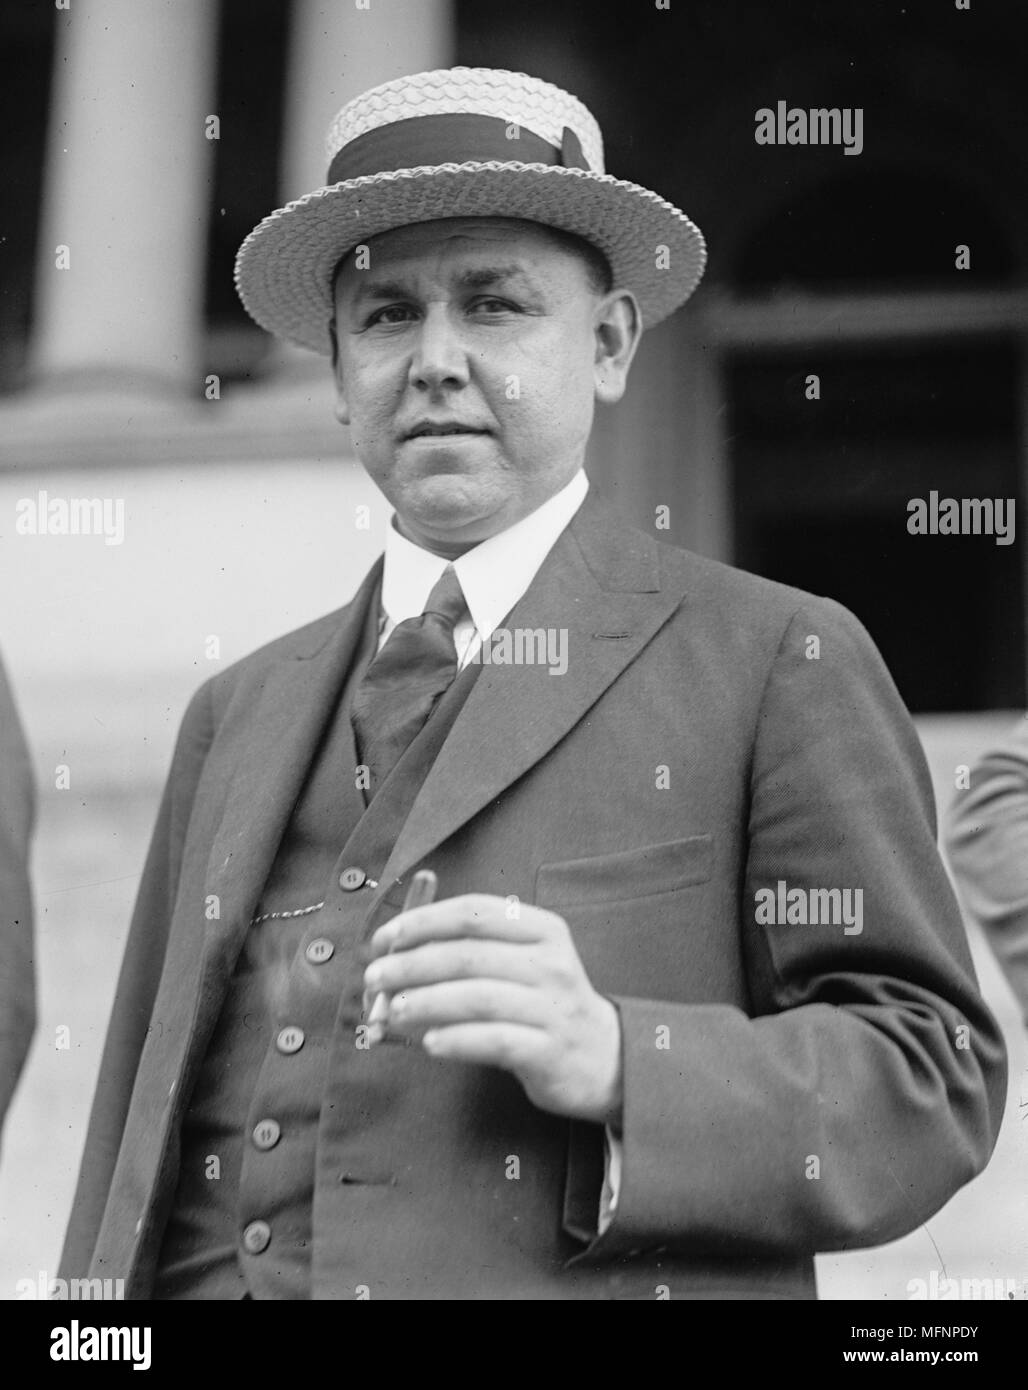 Adolfo de la huerta (1881-1955), uomo politico messicano. Presidente ad interim del Messico 1 Giugno al 30 novembre 1920 dopo l'assassinio di Carranza, Foto Stock